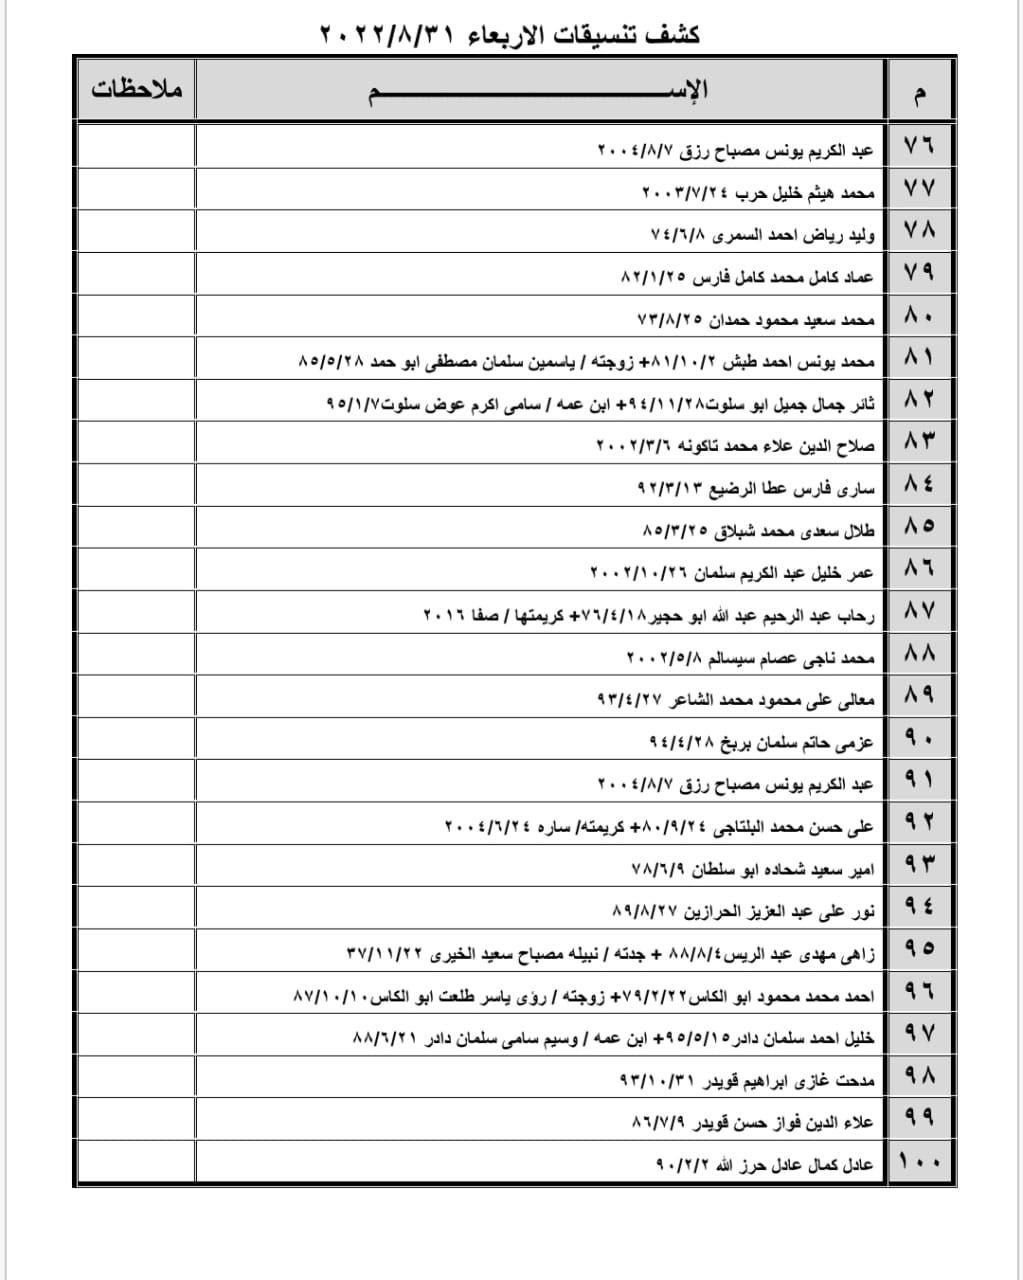 بالأسماء: داخلية غزة تنشر "كشف تنسيقات مصرية" للسفر عبر معبر رفح الأربعاء 31 أغسطس 2022